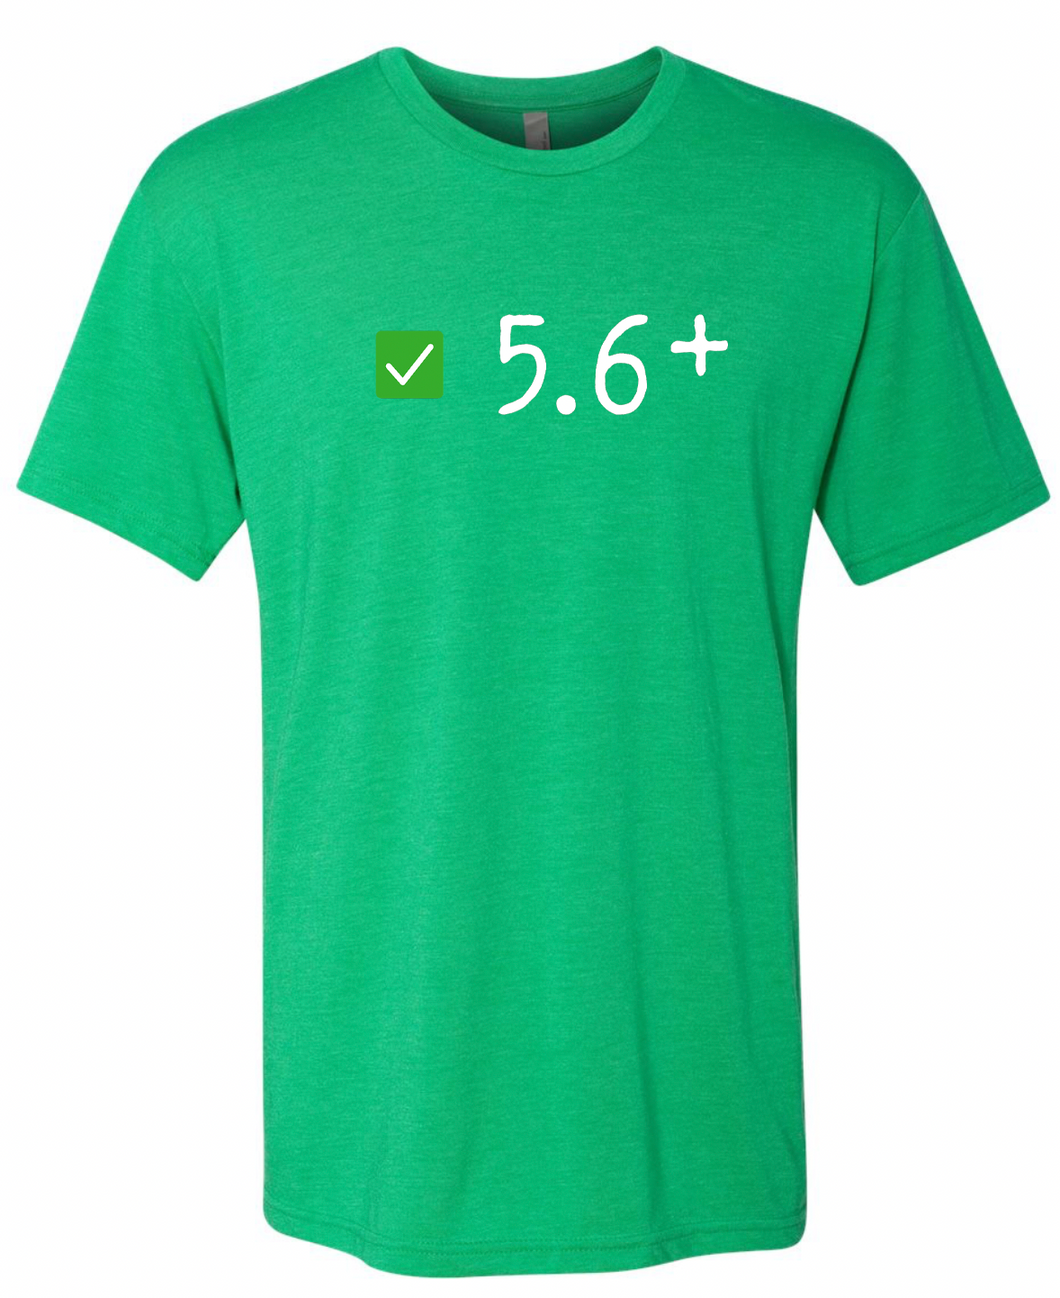 *NEW* 5.6+ T-Shirt - Green